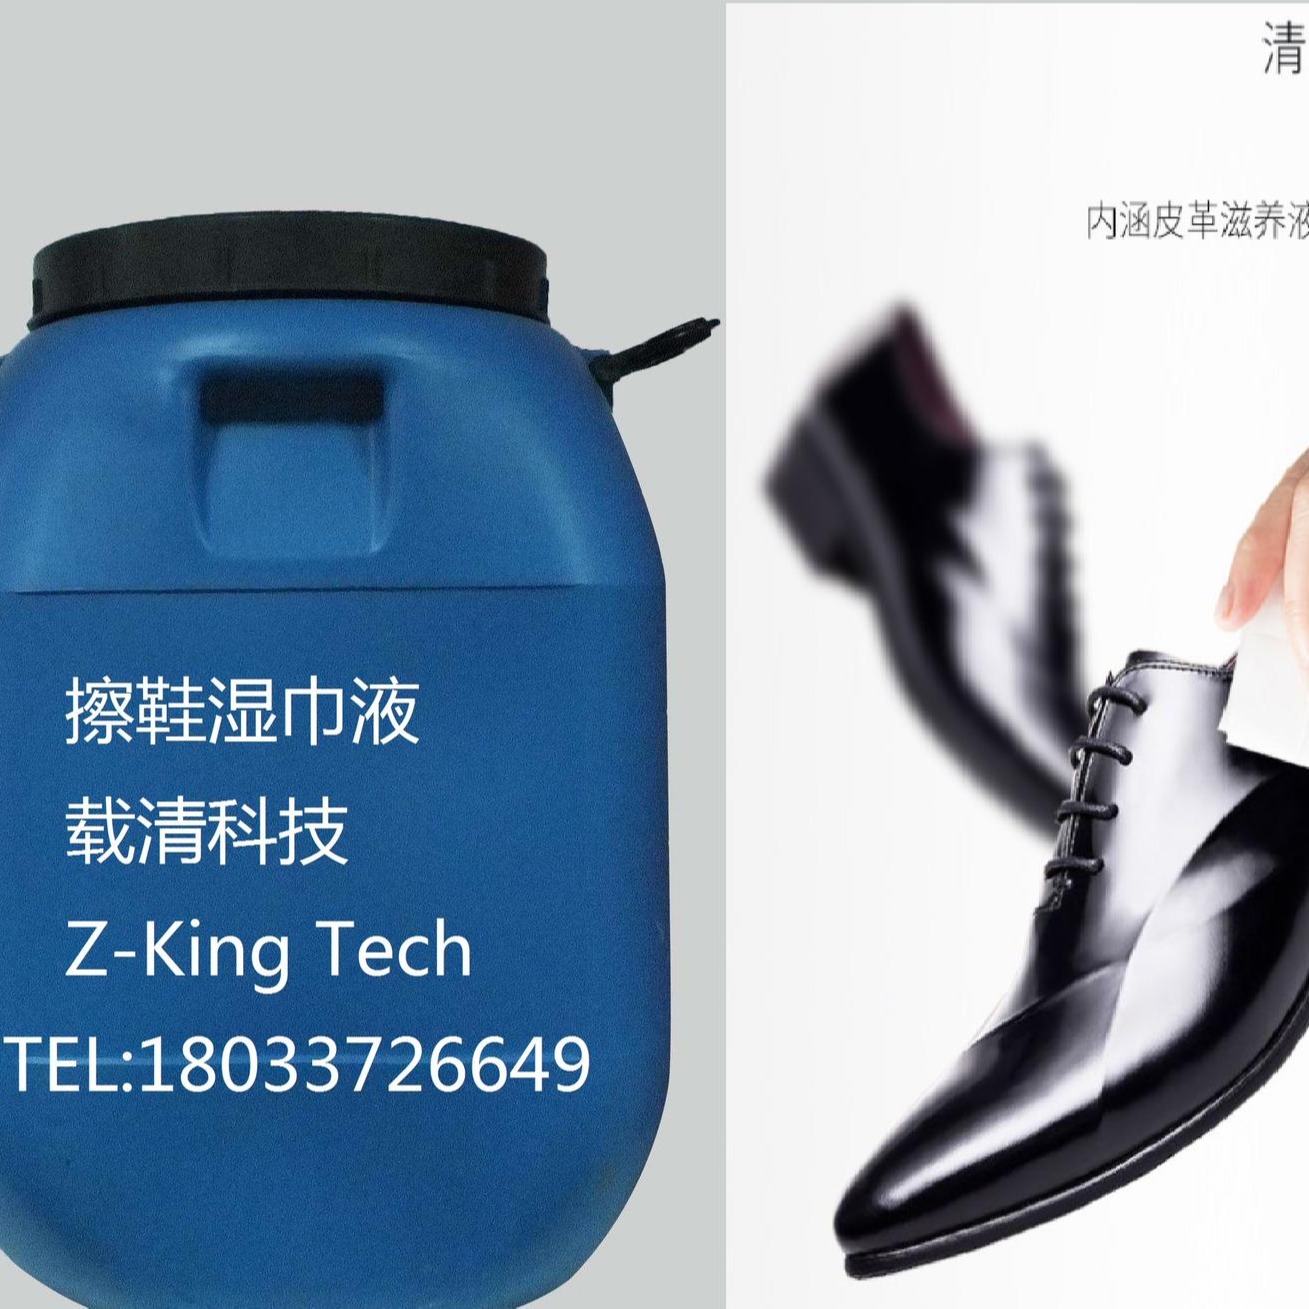 擦鞋湿巾液，27元/kg，1开4使用，载清，ZK801